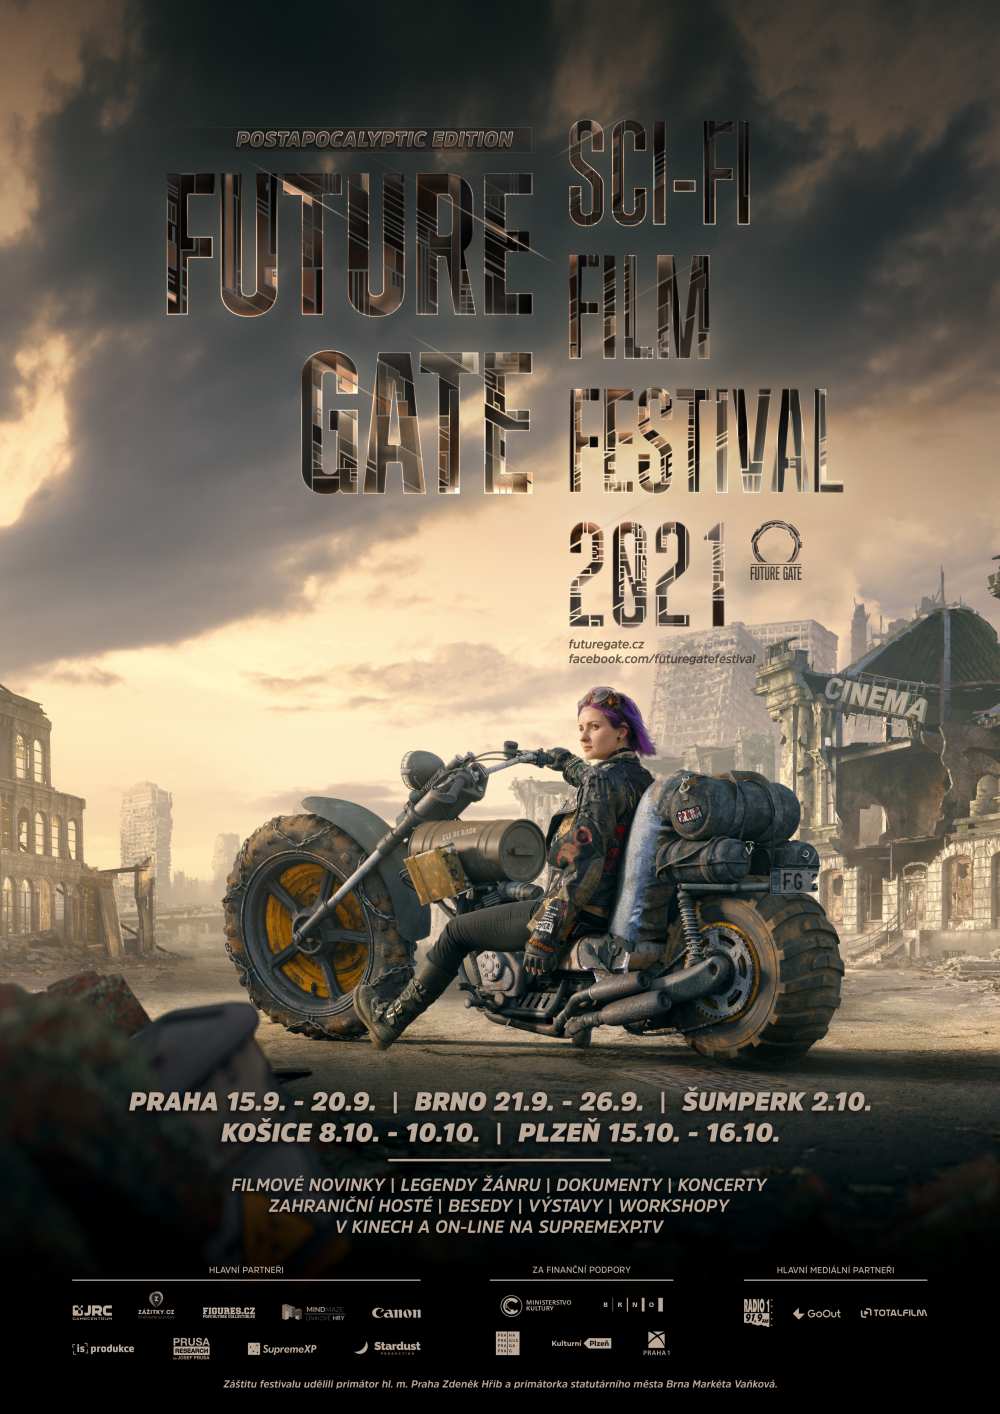 Invitation: Future Gate sci-fi film festival